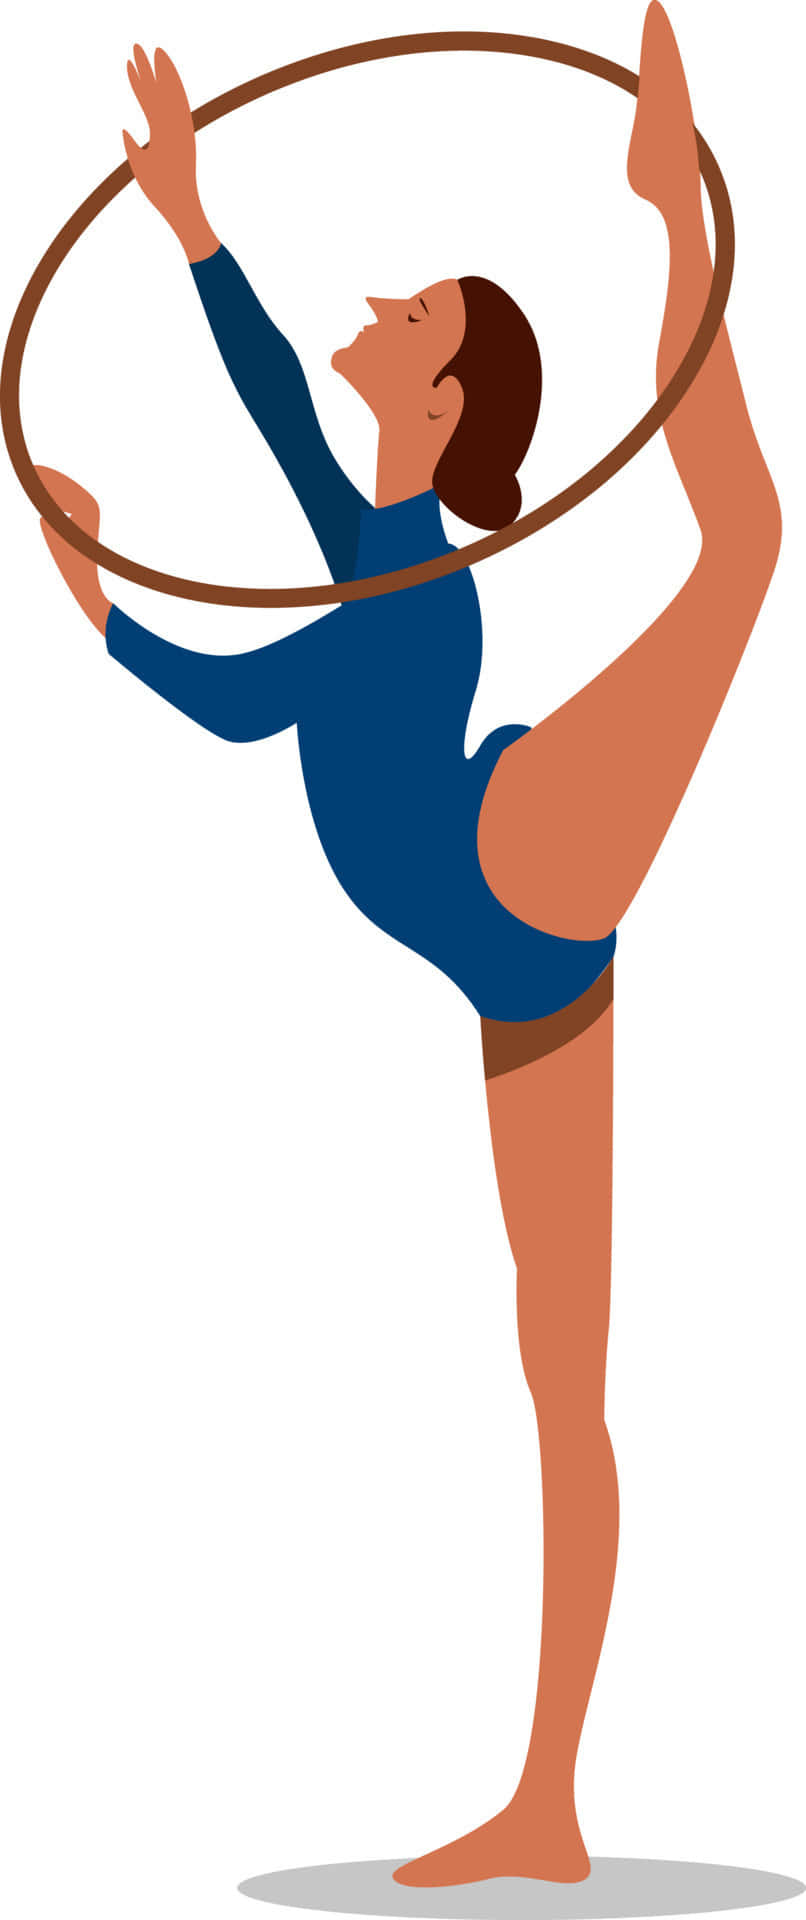 Gymnast performing an elegant aerial routine